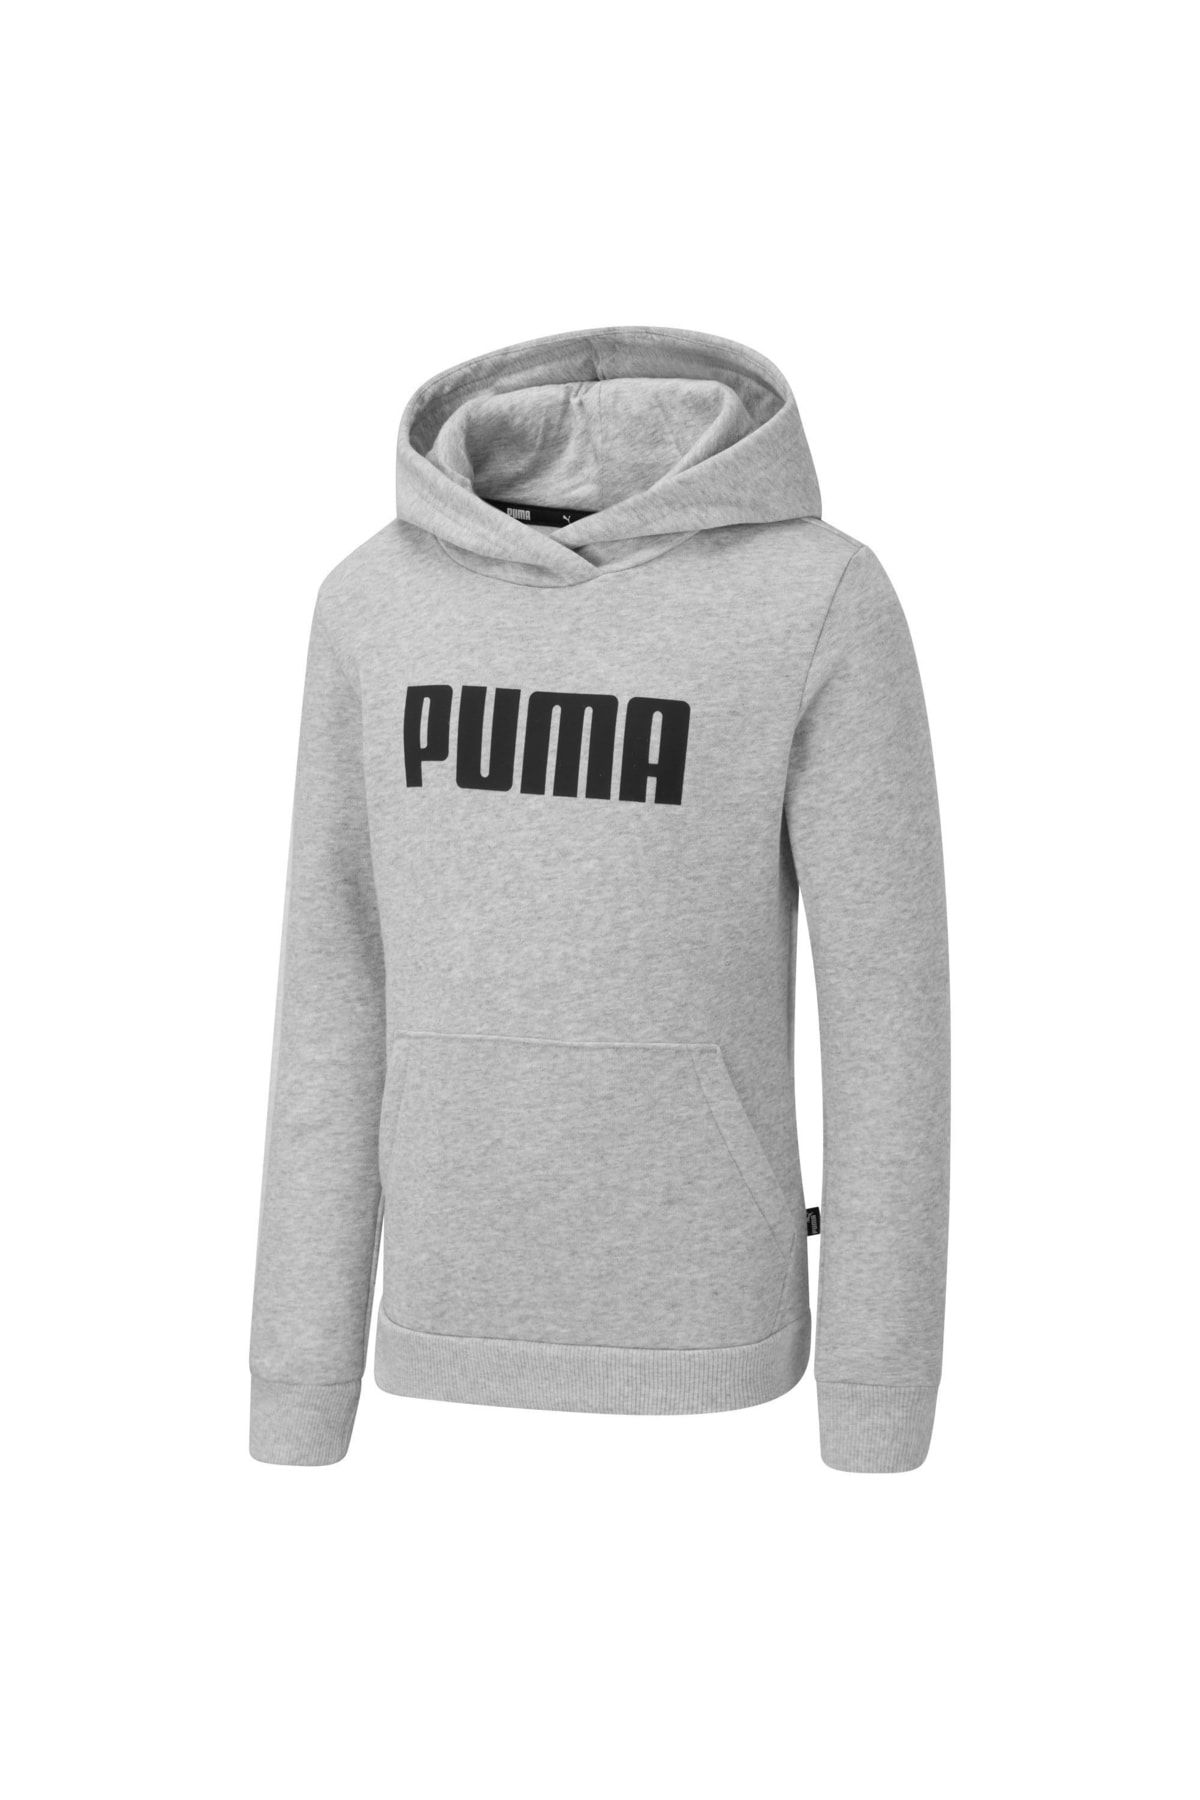 Puma Essentıals Uzun Kollu Kapüşonlu Sweatshirt Jr